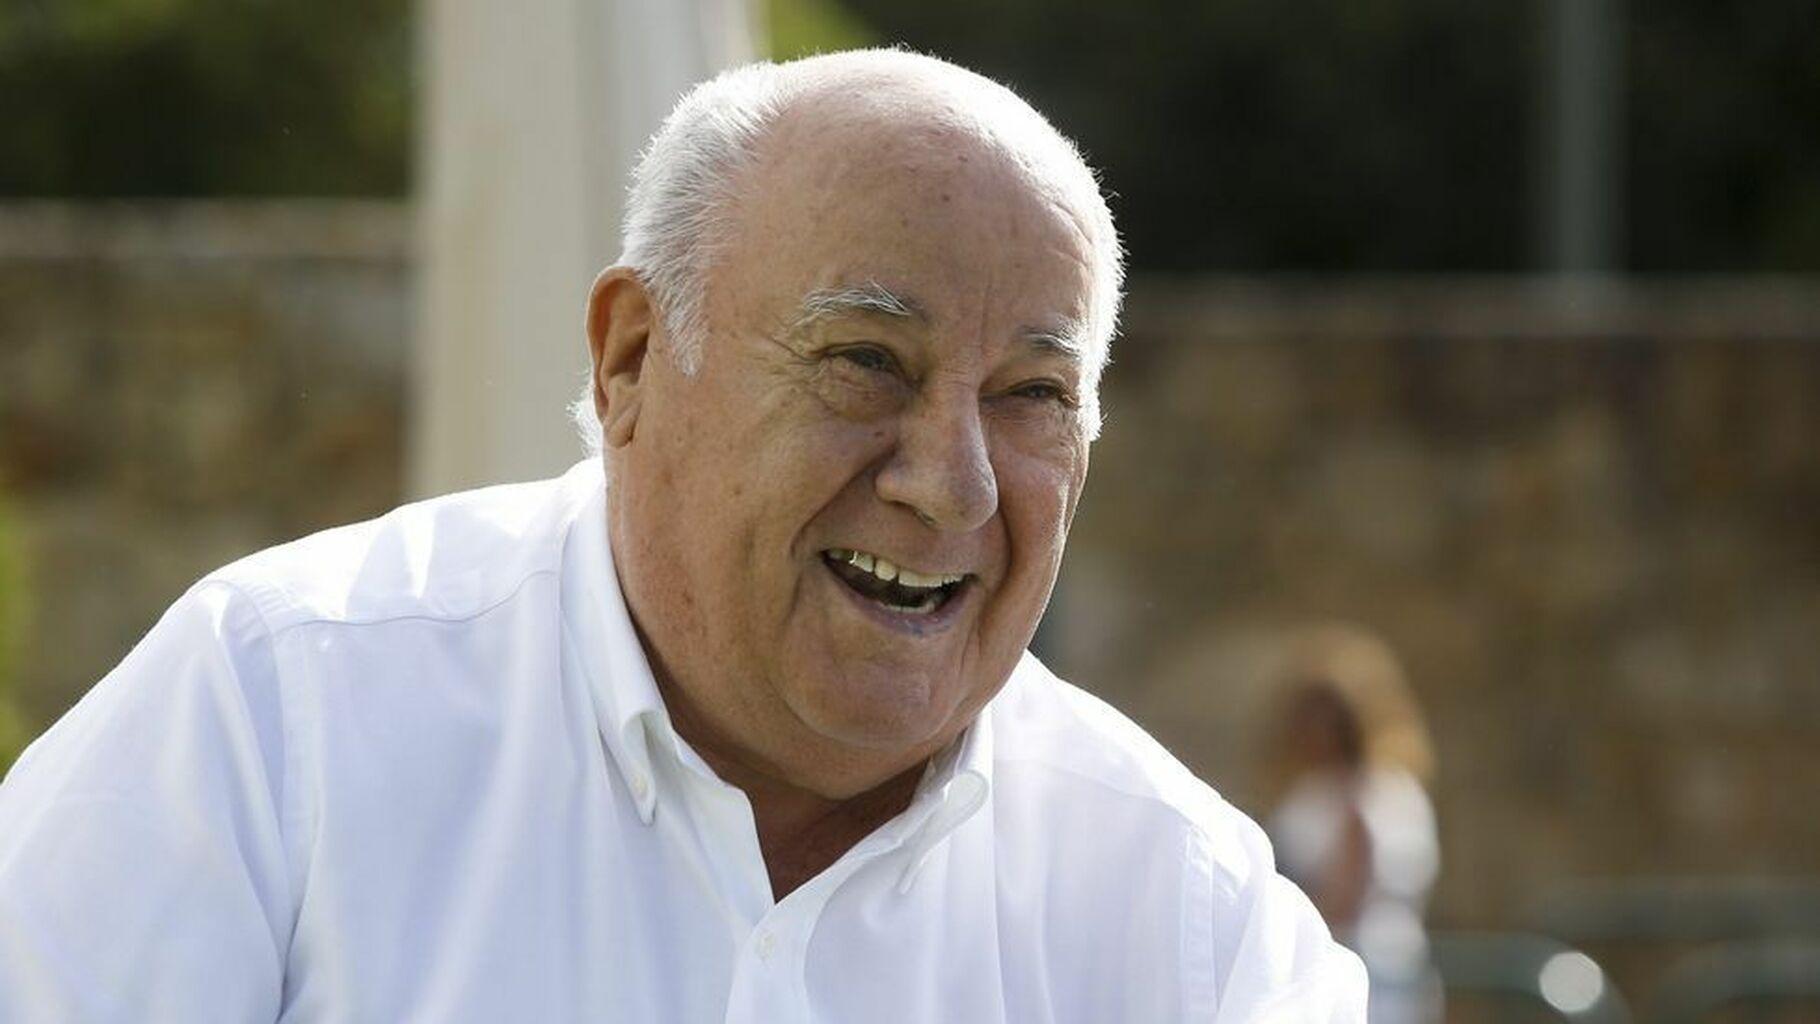 Lista Forbes 2022: Amancio Ortega sigue siendo el más rico de España pero con pérdidas